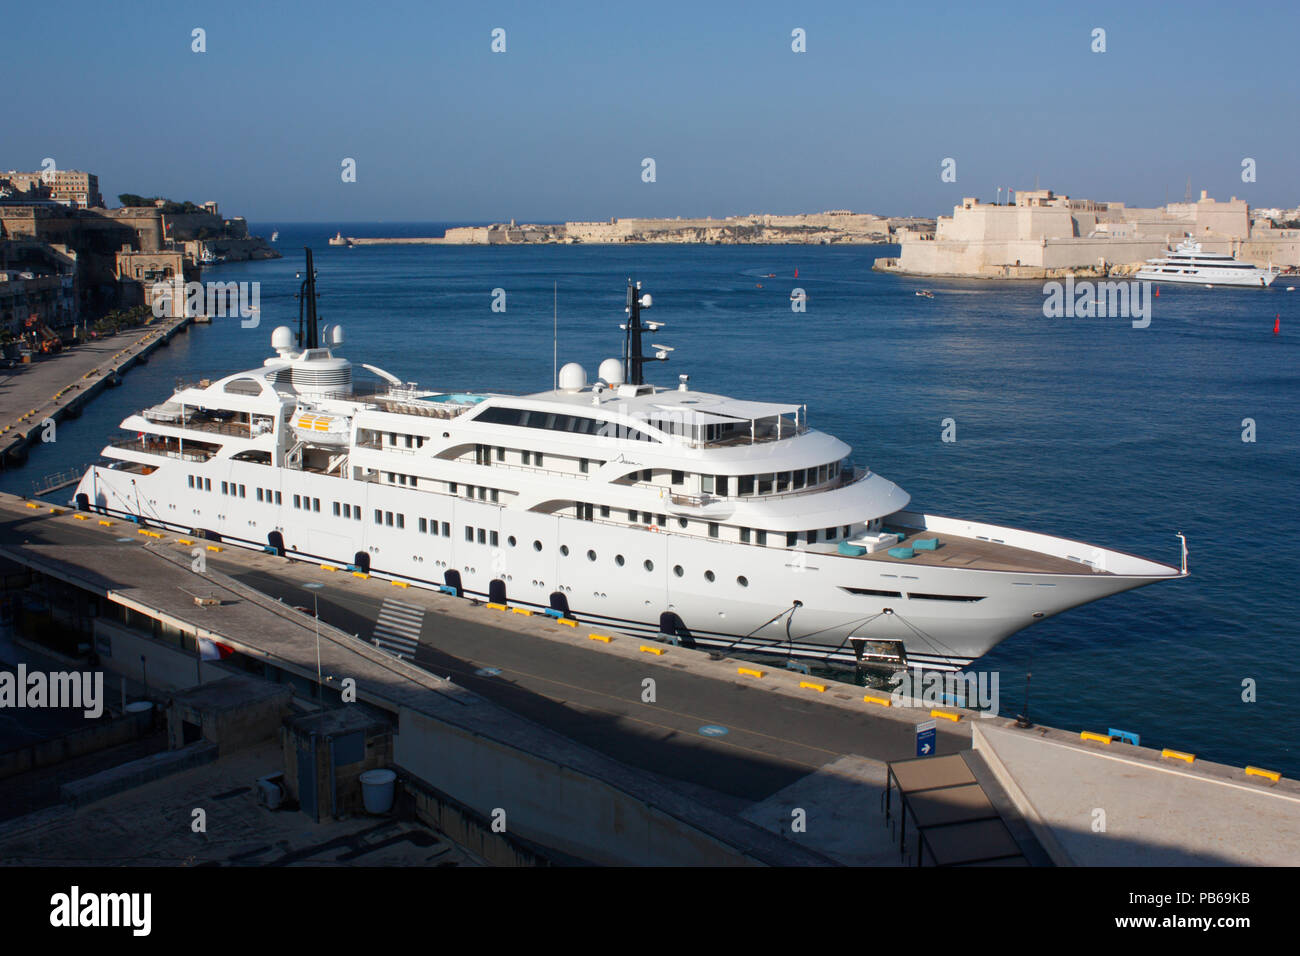 El buque de pasajeros "Dream (OMI) 9005871 en el gran puerto de Malta. Foto de stock